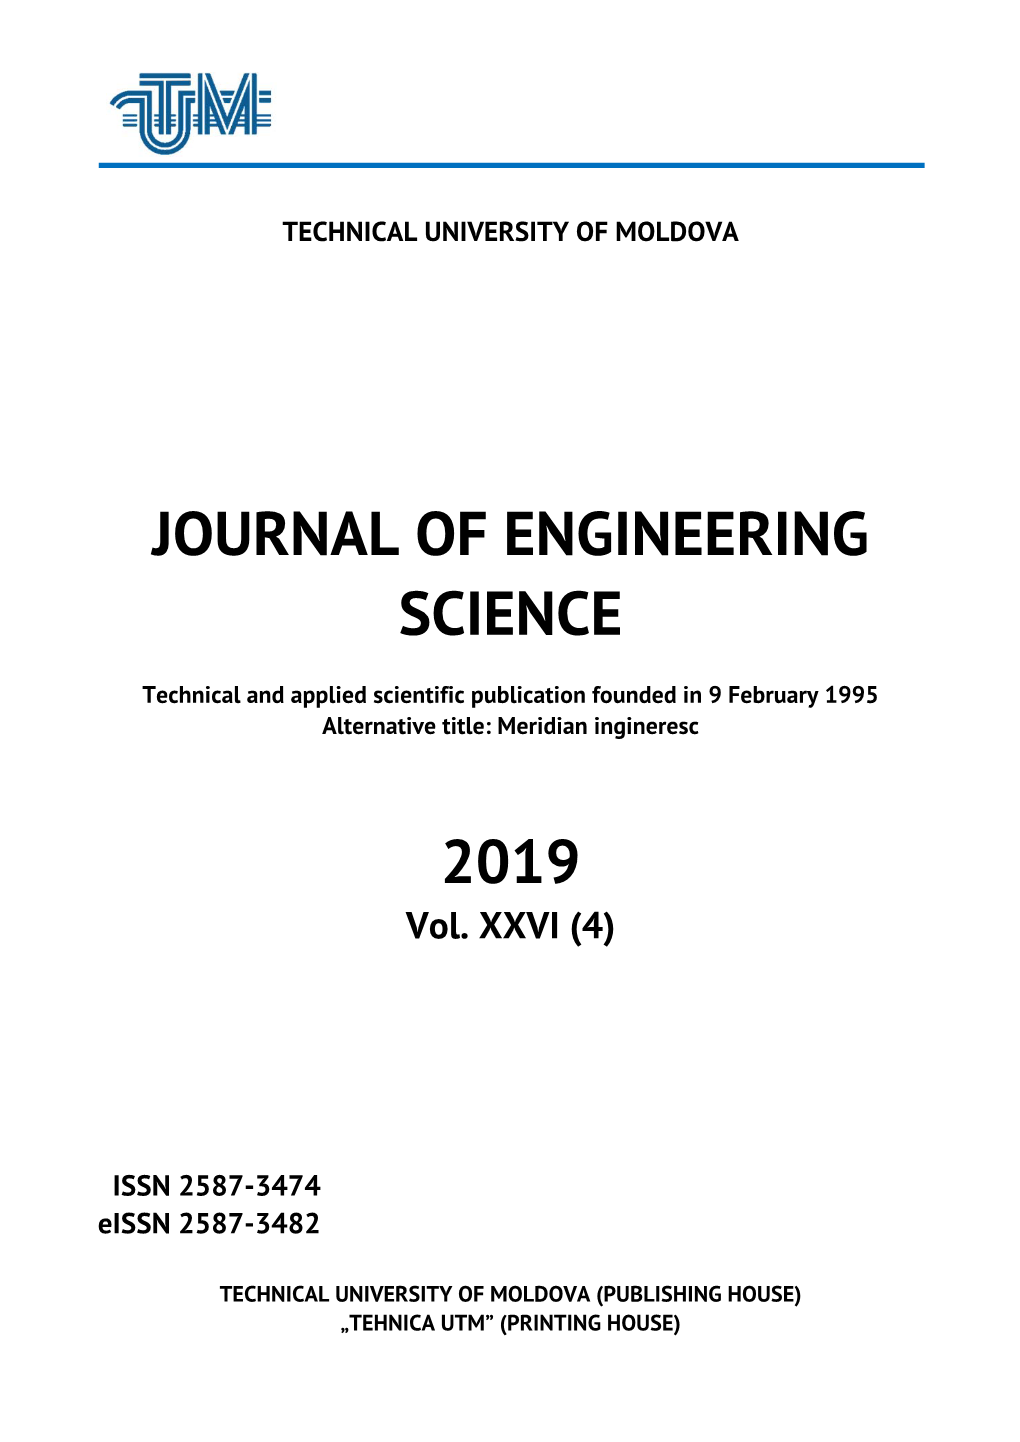 Journal of Engineering Science 2019